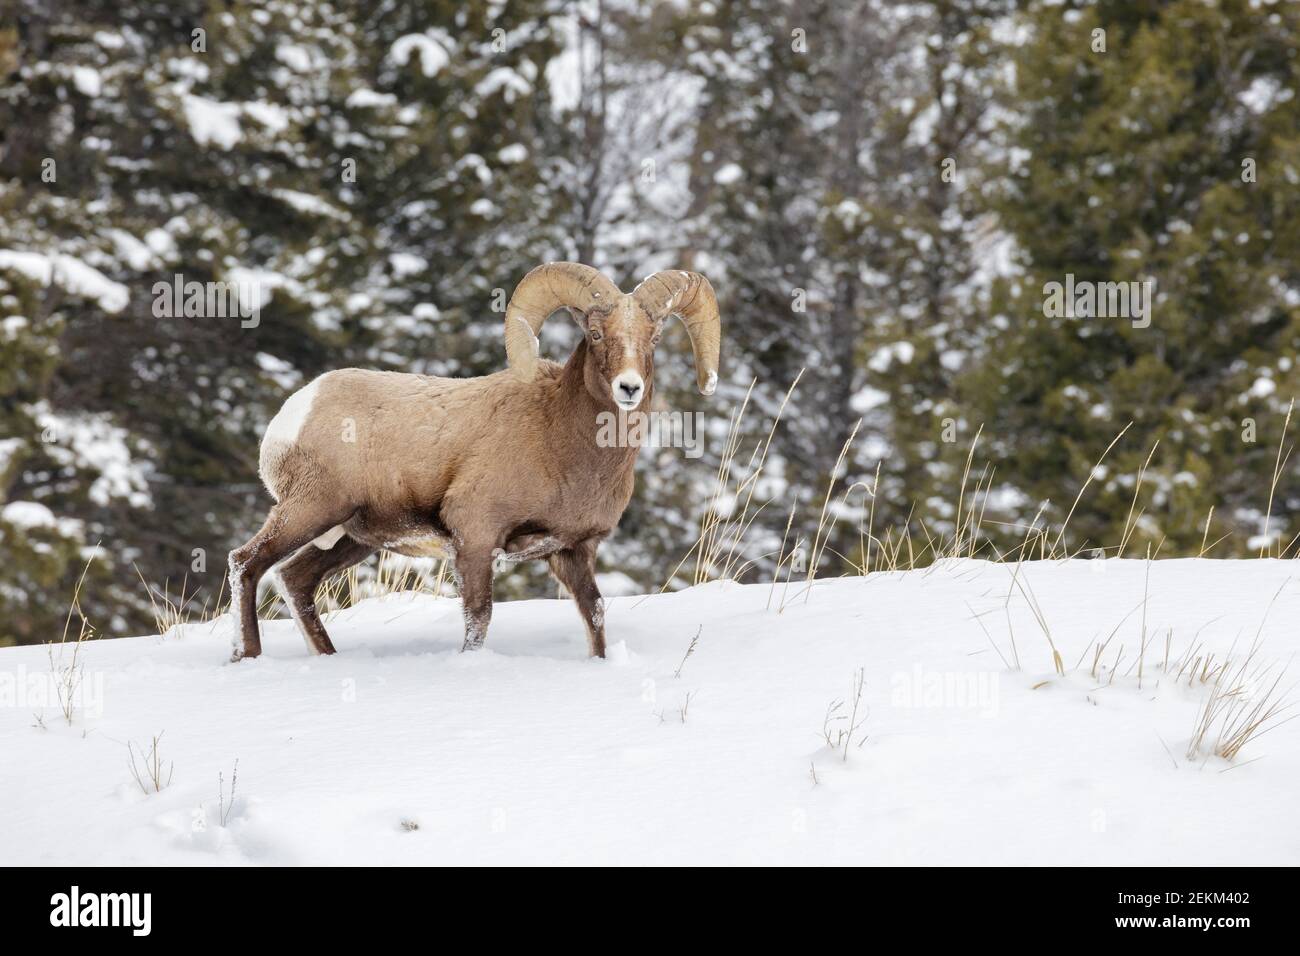 Parc national de Yellowstone, Wyoming : RAM de Bighorn (Ovis canadensis) en hiver Banque D'Images